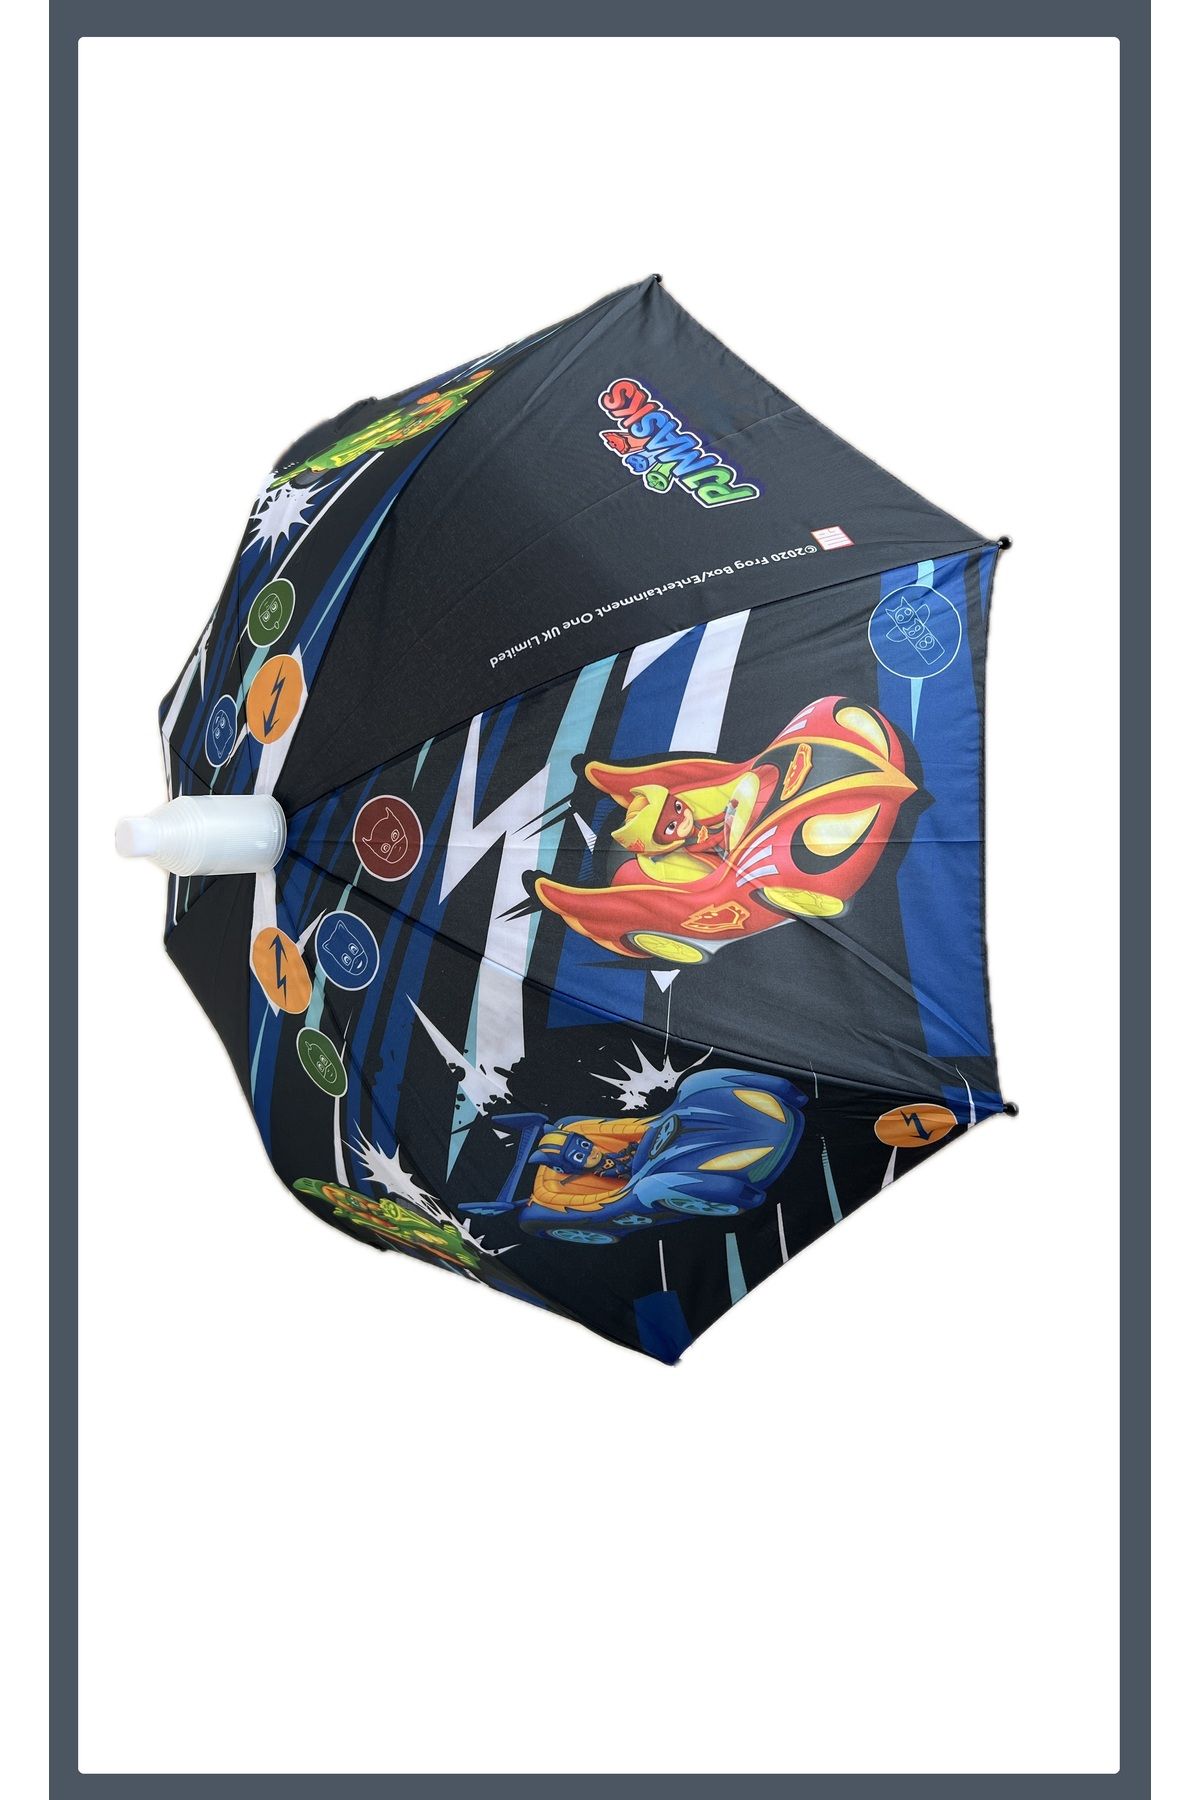 EZMK EV GEREÇLERİ Pvc Kılıflı Lisanslı Orijinal Pj Mask Çocuk Şemsiyesi, Düdüklü